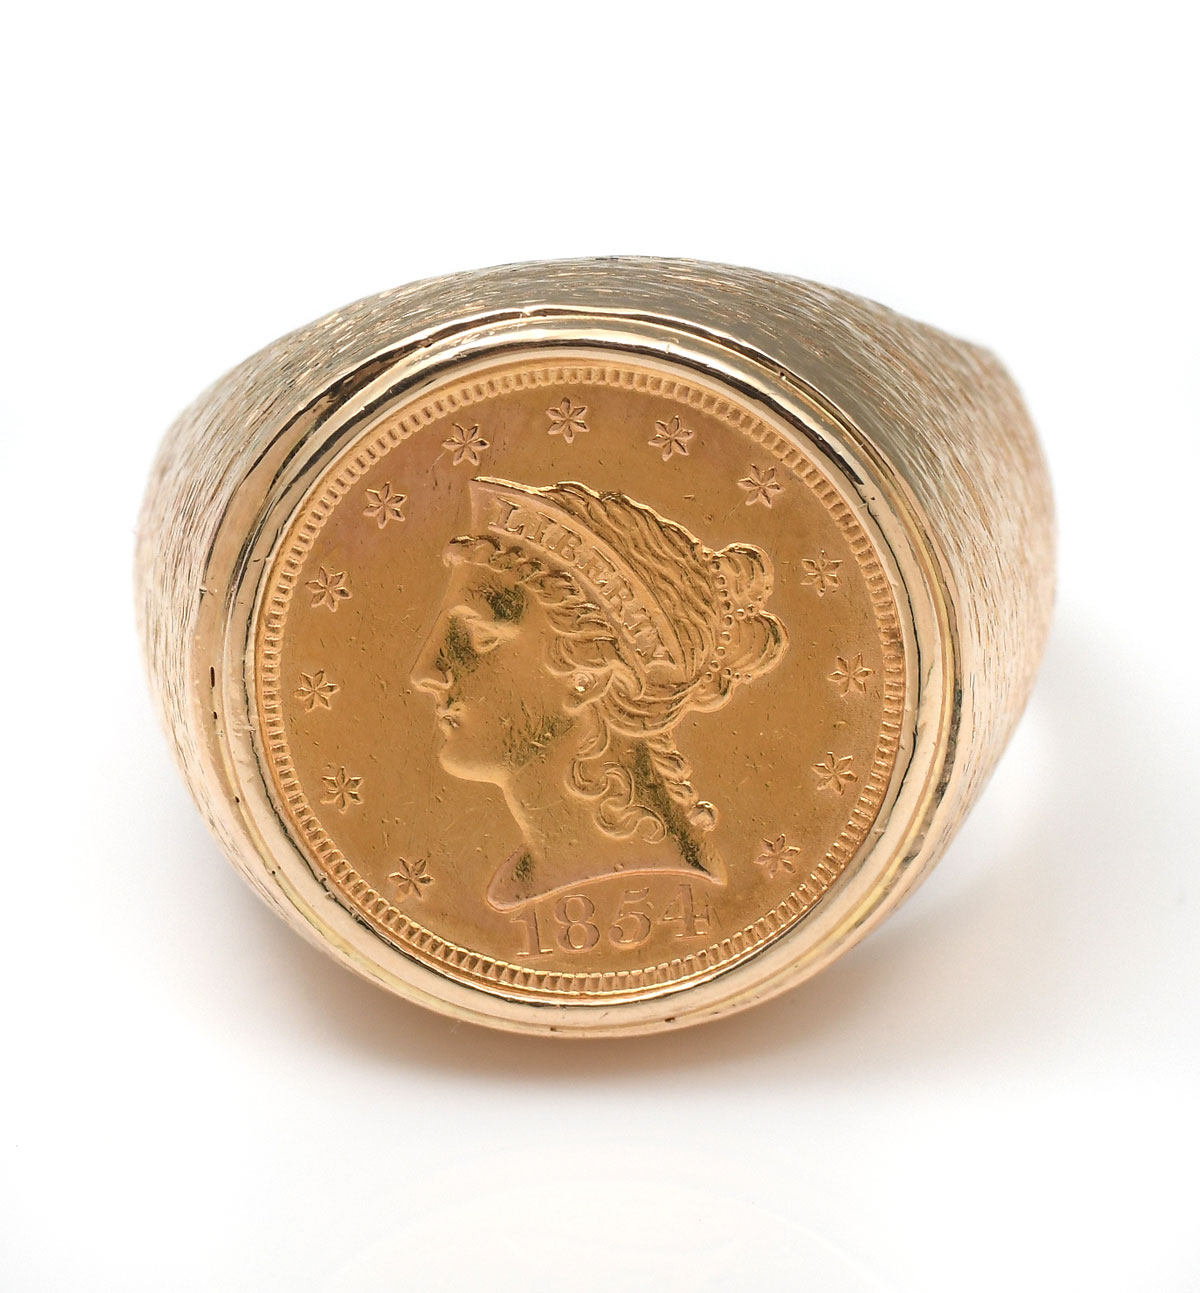 1854 2 5 DOLLAR GOLD COIN IN A 36c951